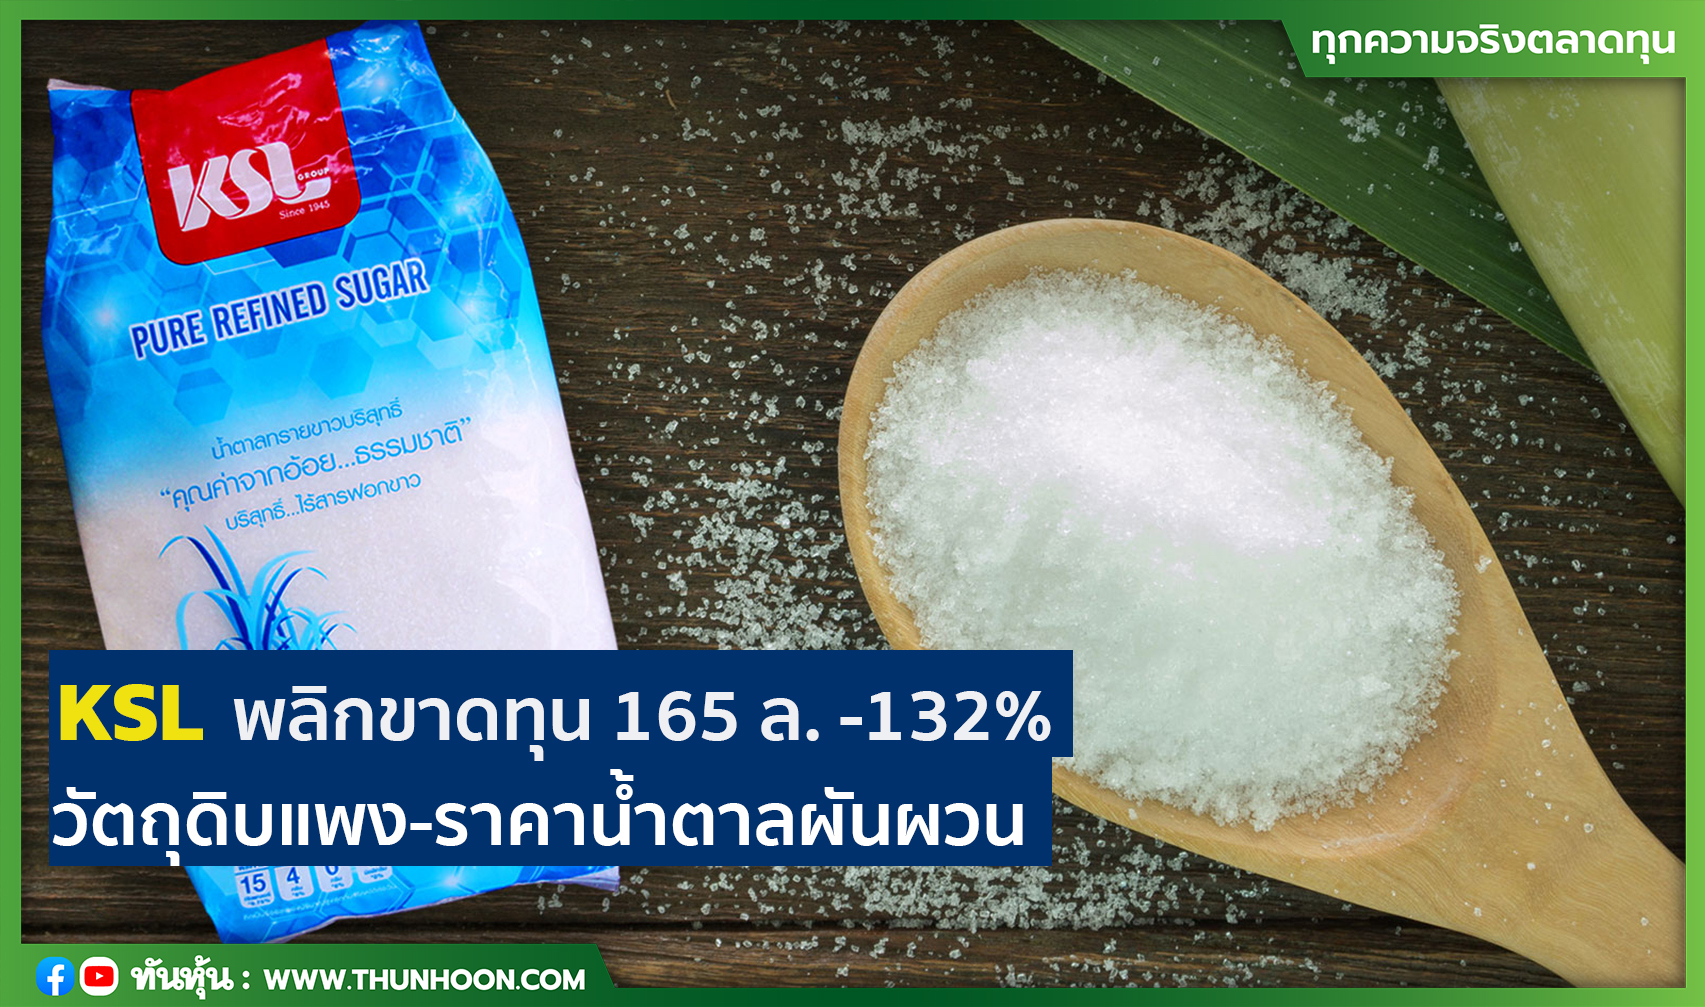 KSL พลิกขาดทุน 165 ล. -132% วัตถุดิบแพง-ราคาน้ำตาลผันผวน